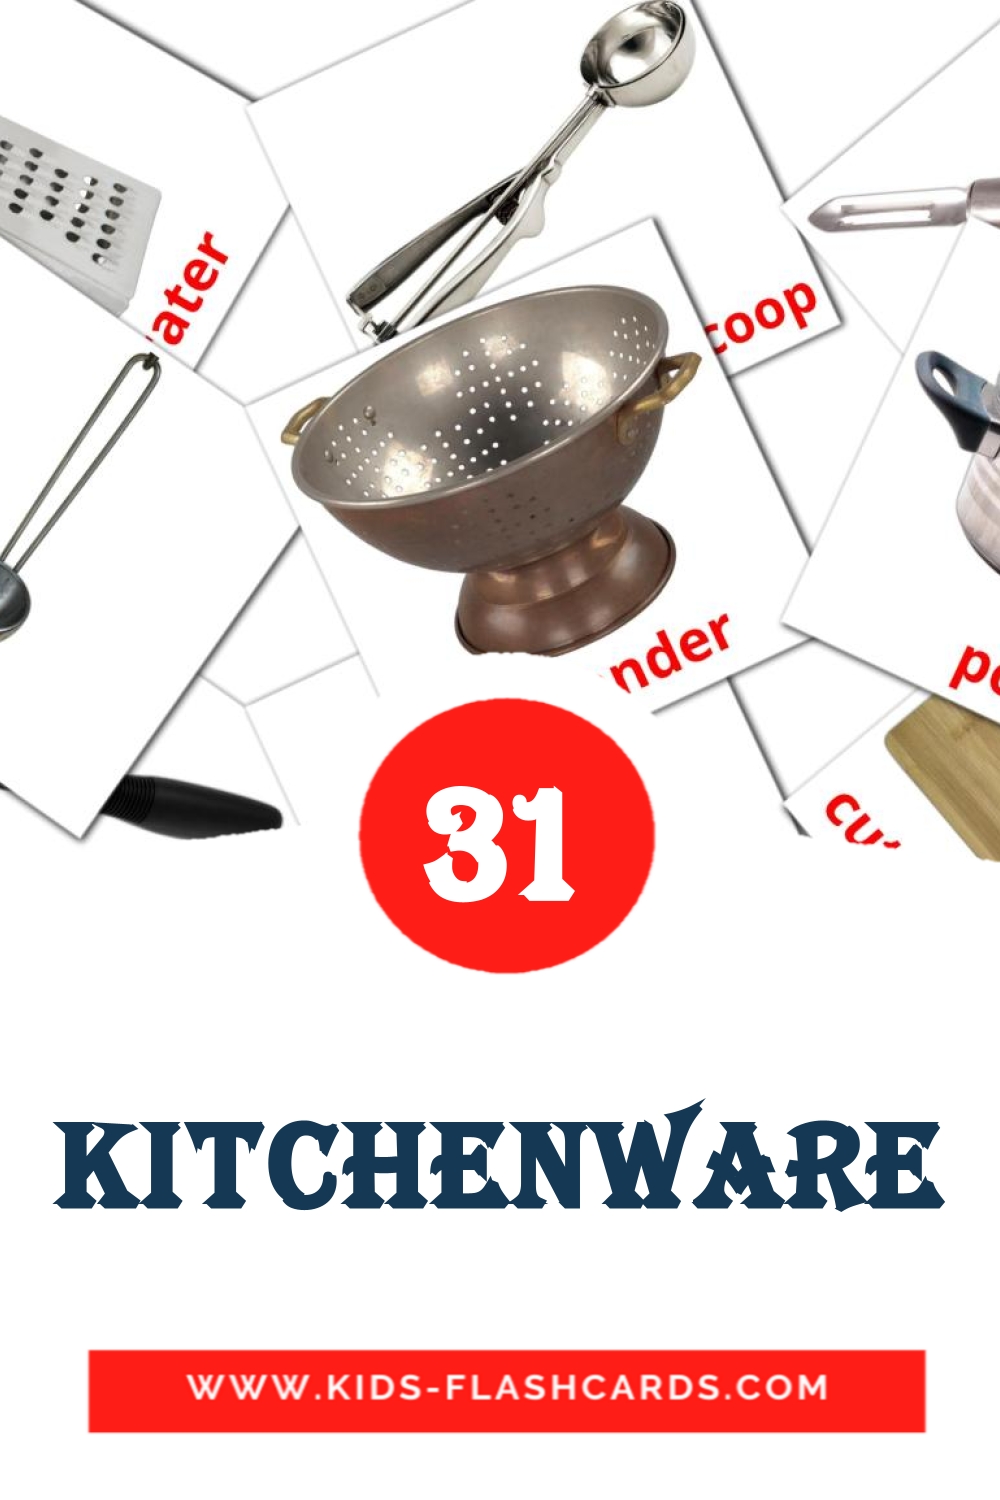 35 cartes illustrées de Kitchenware pour la maternelle en anglais